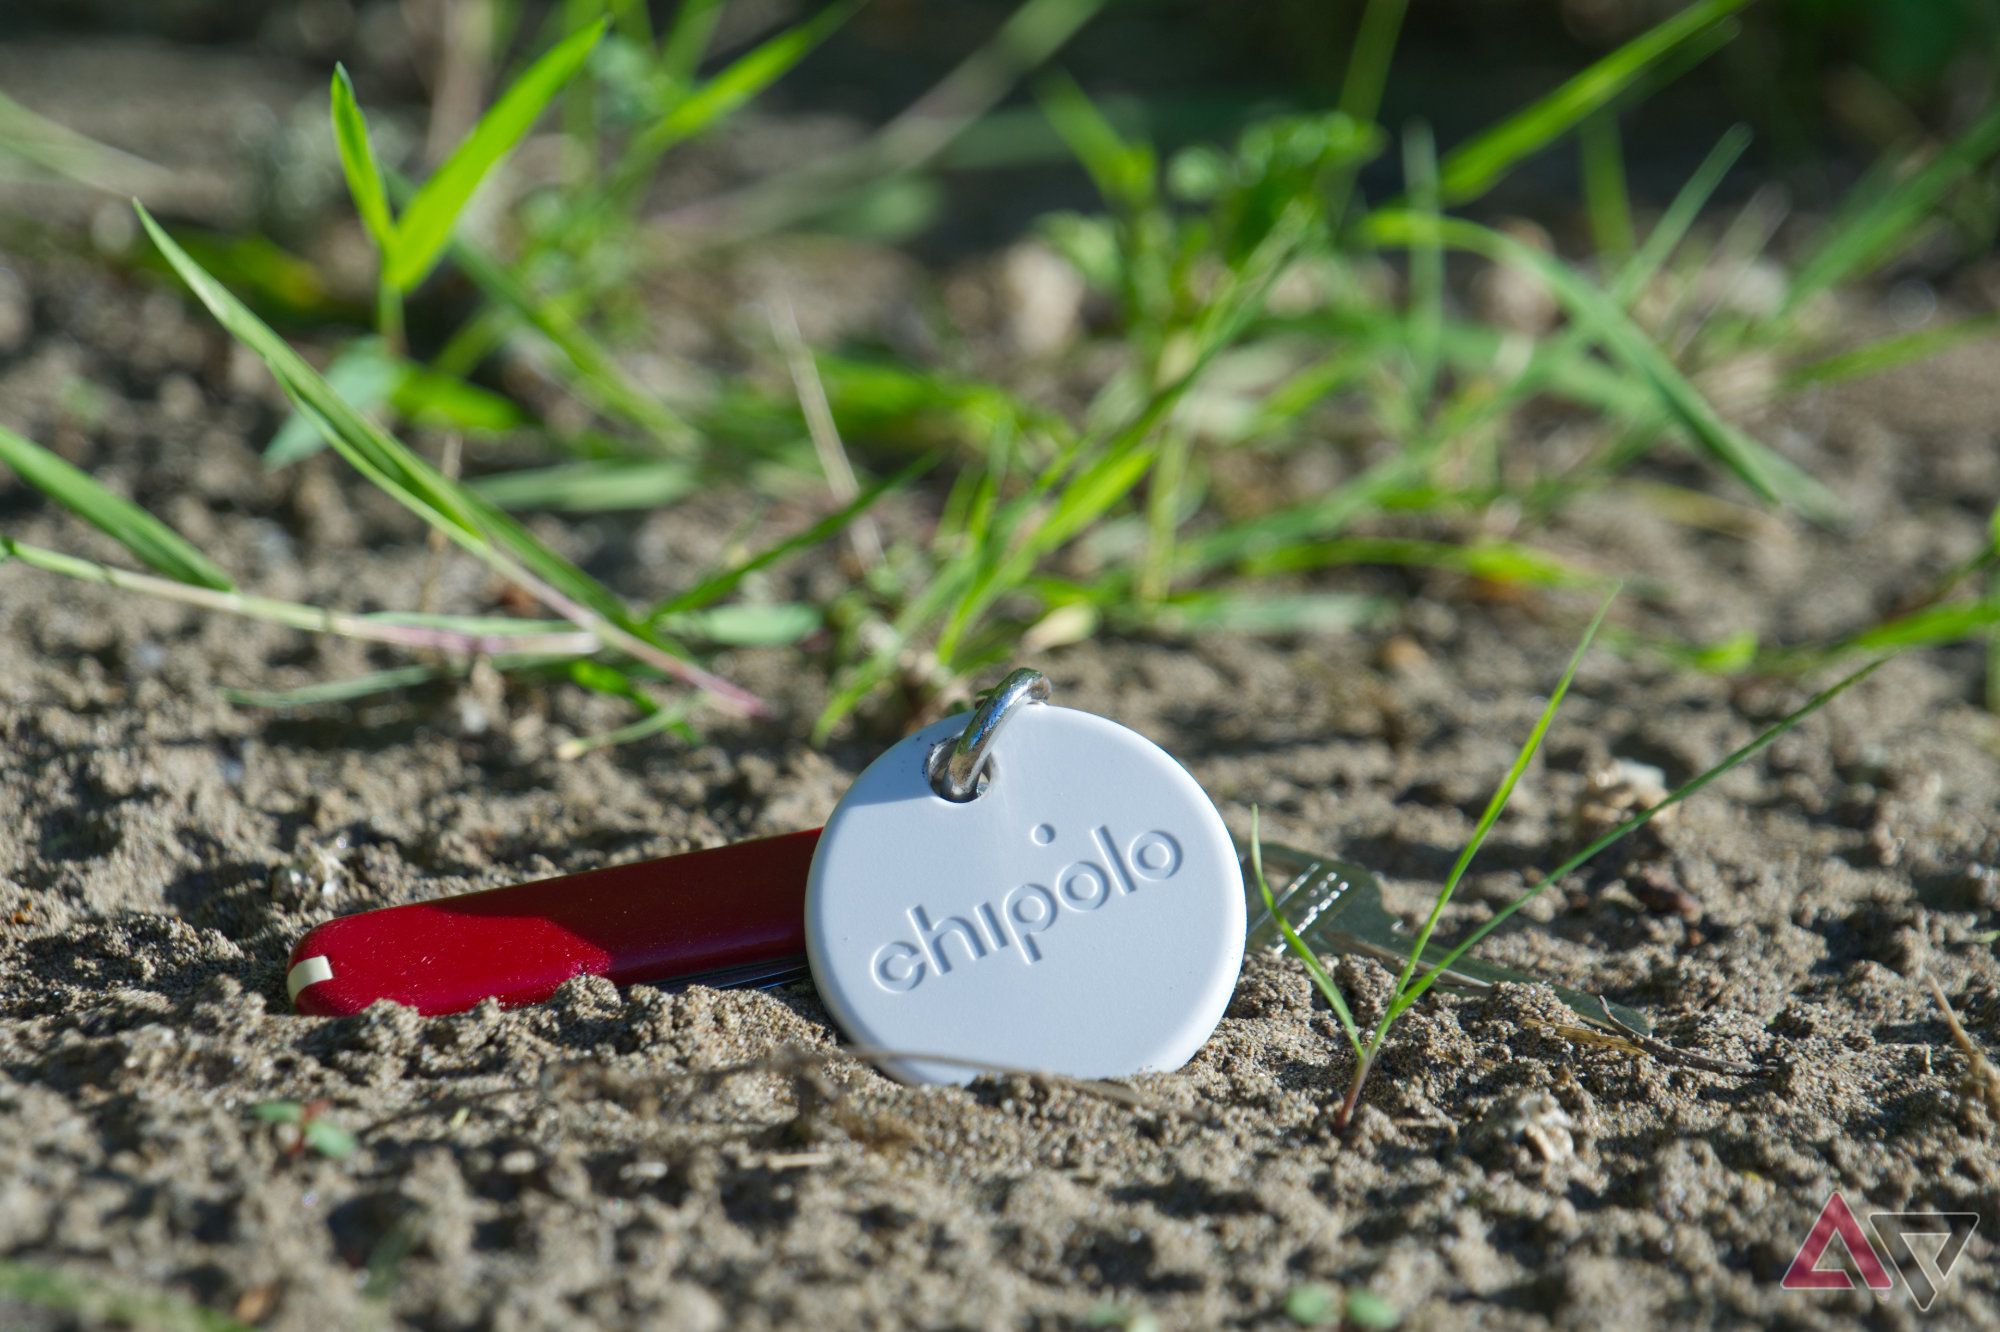 Etiqueta Chipolo em um chaveiro apoiado na areia com folhas de grama ao fundo